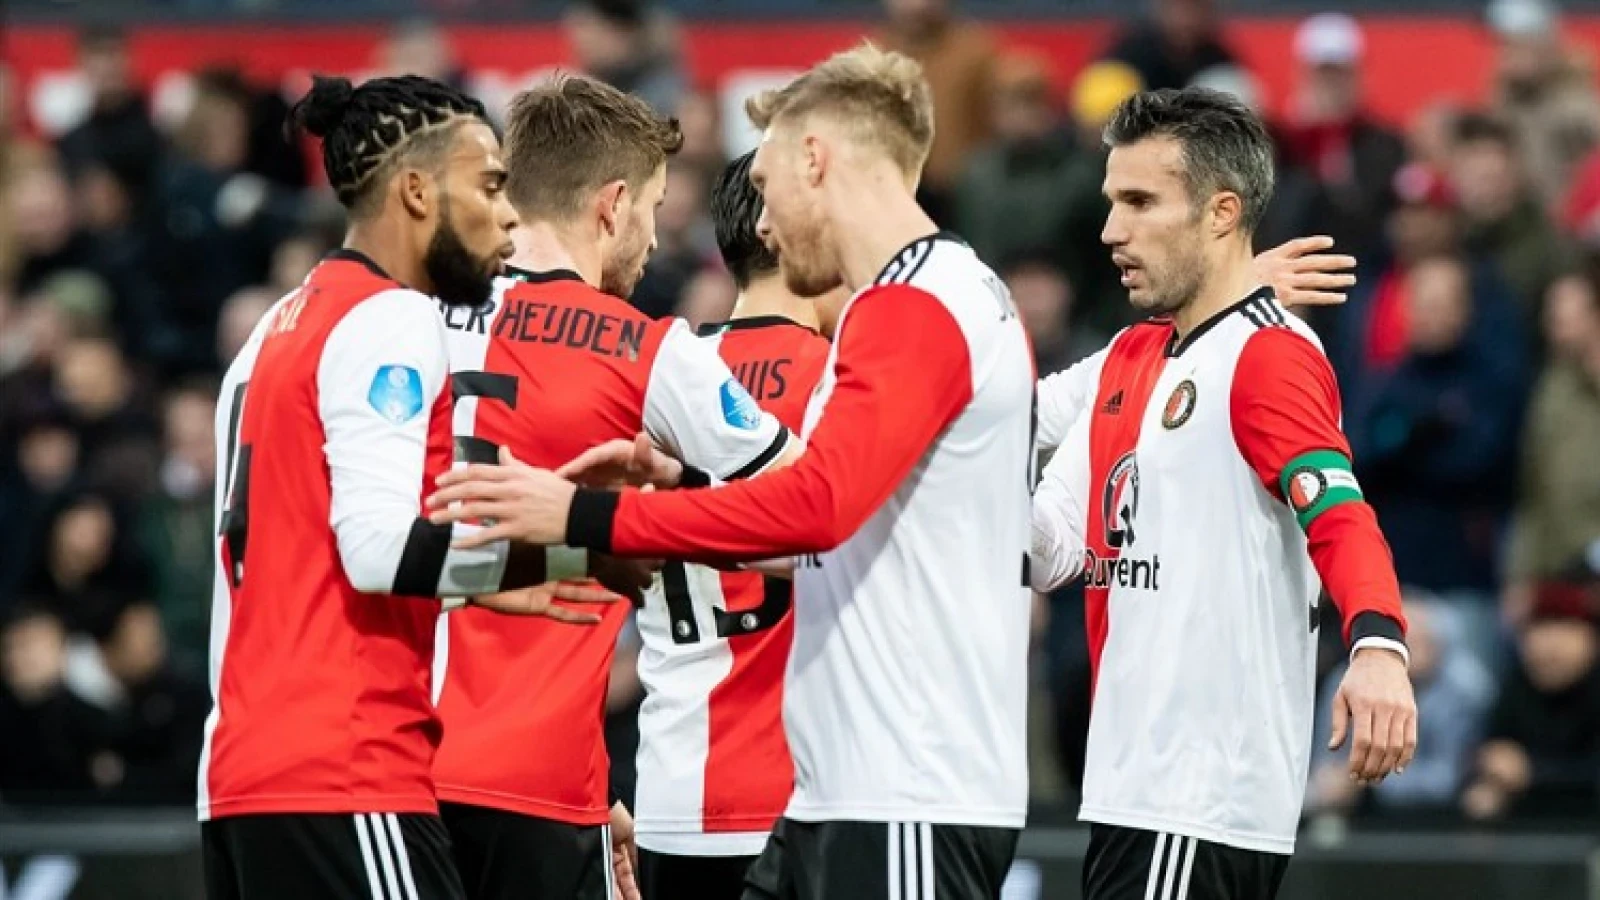 OPSTELLING | Veel wisselingen bij Feyenoord voor uitwedstrijd tegen Vitesse